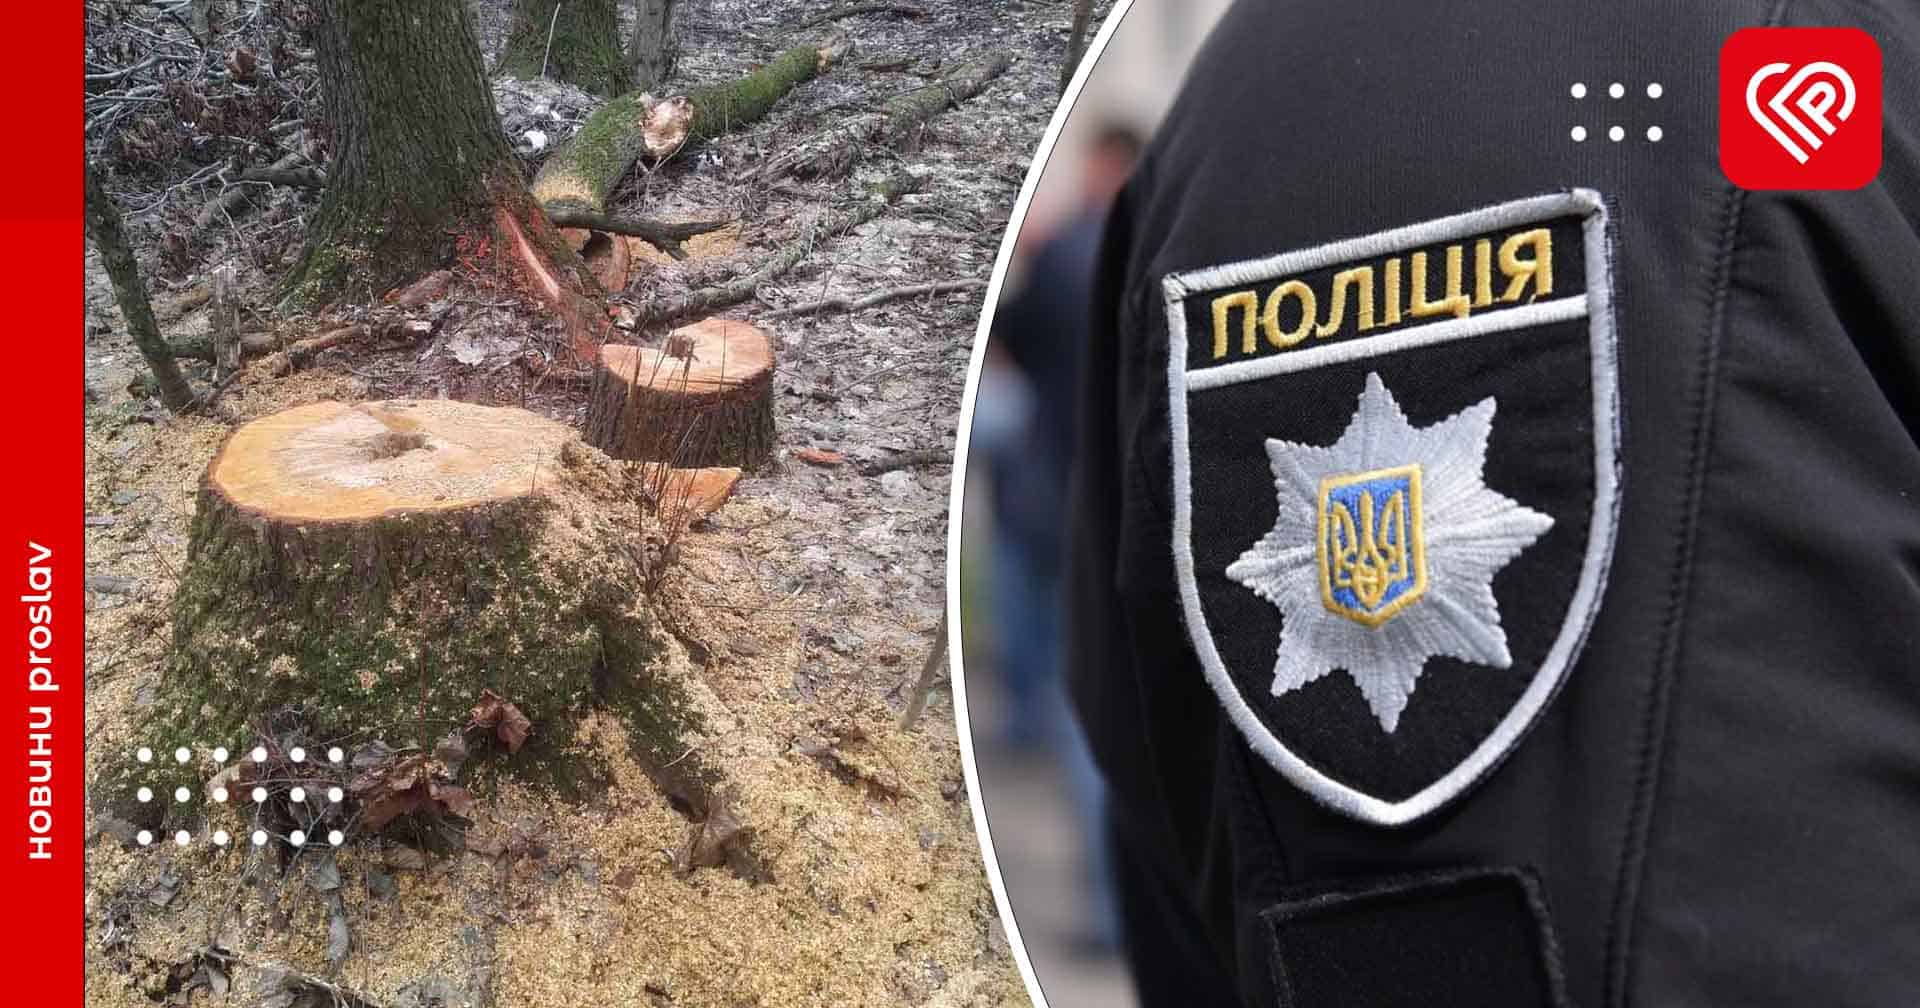 Переяславській поліції повідомили про незаконну вирубку дерев у парку загальнодержавного значення